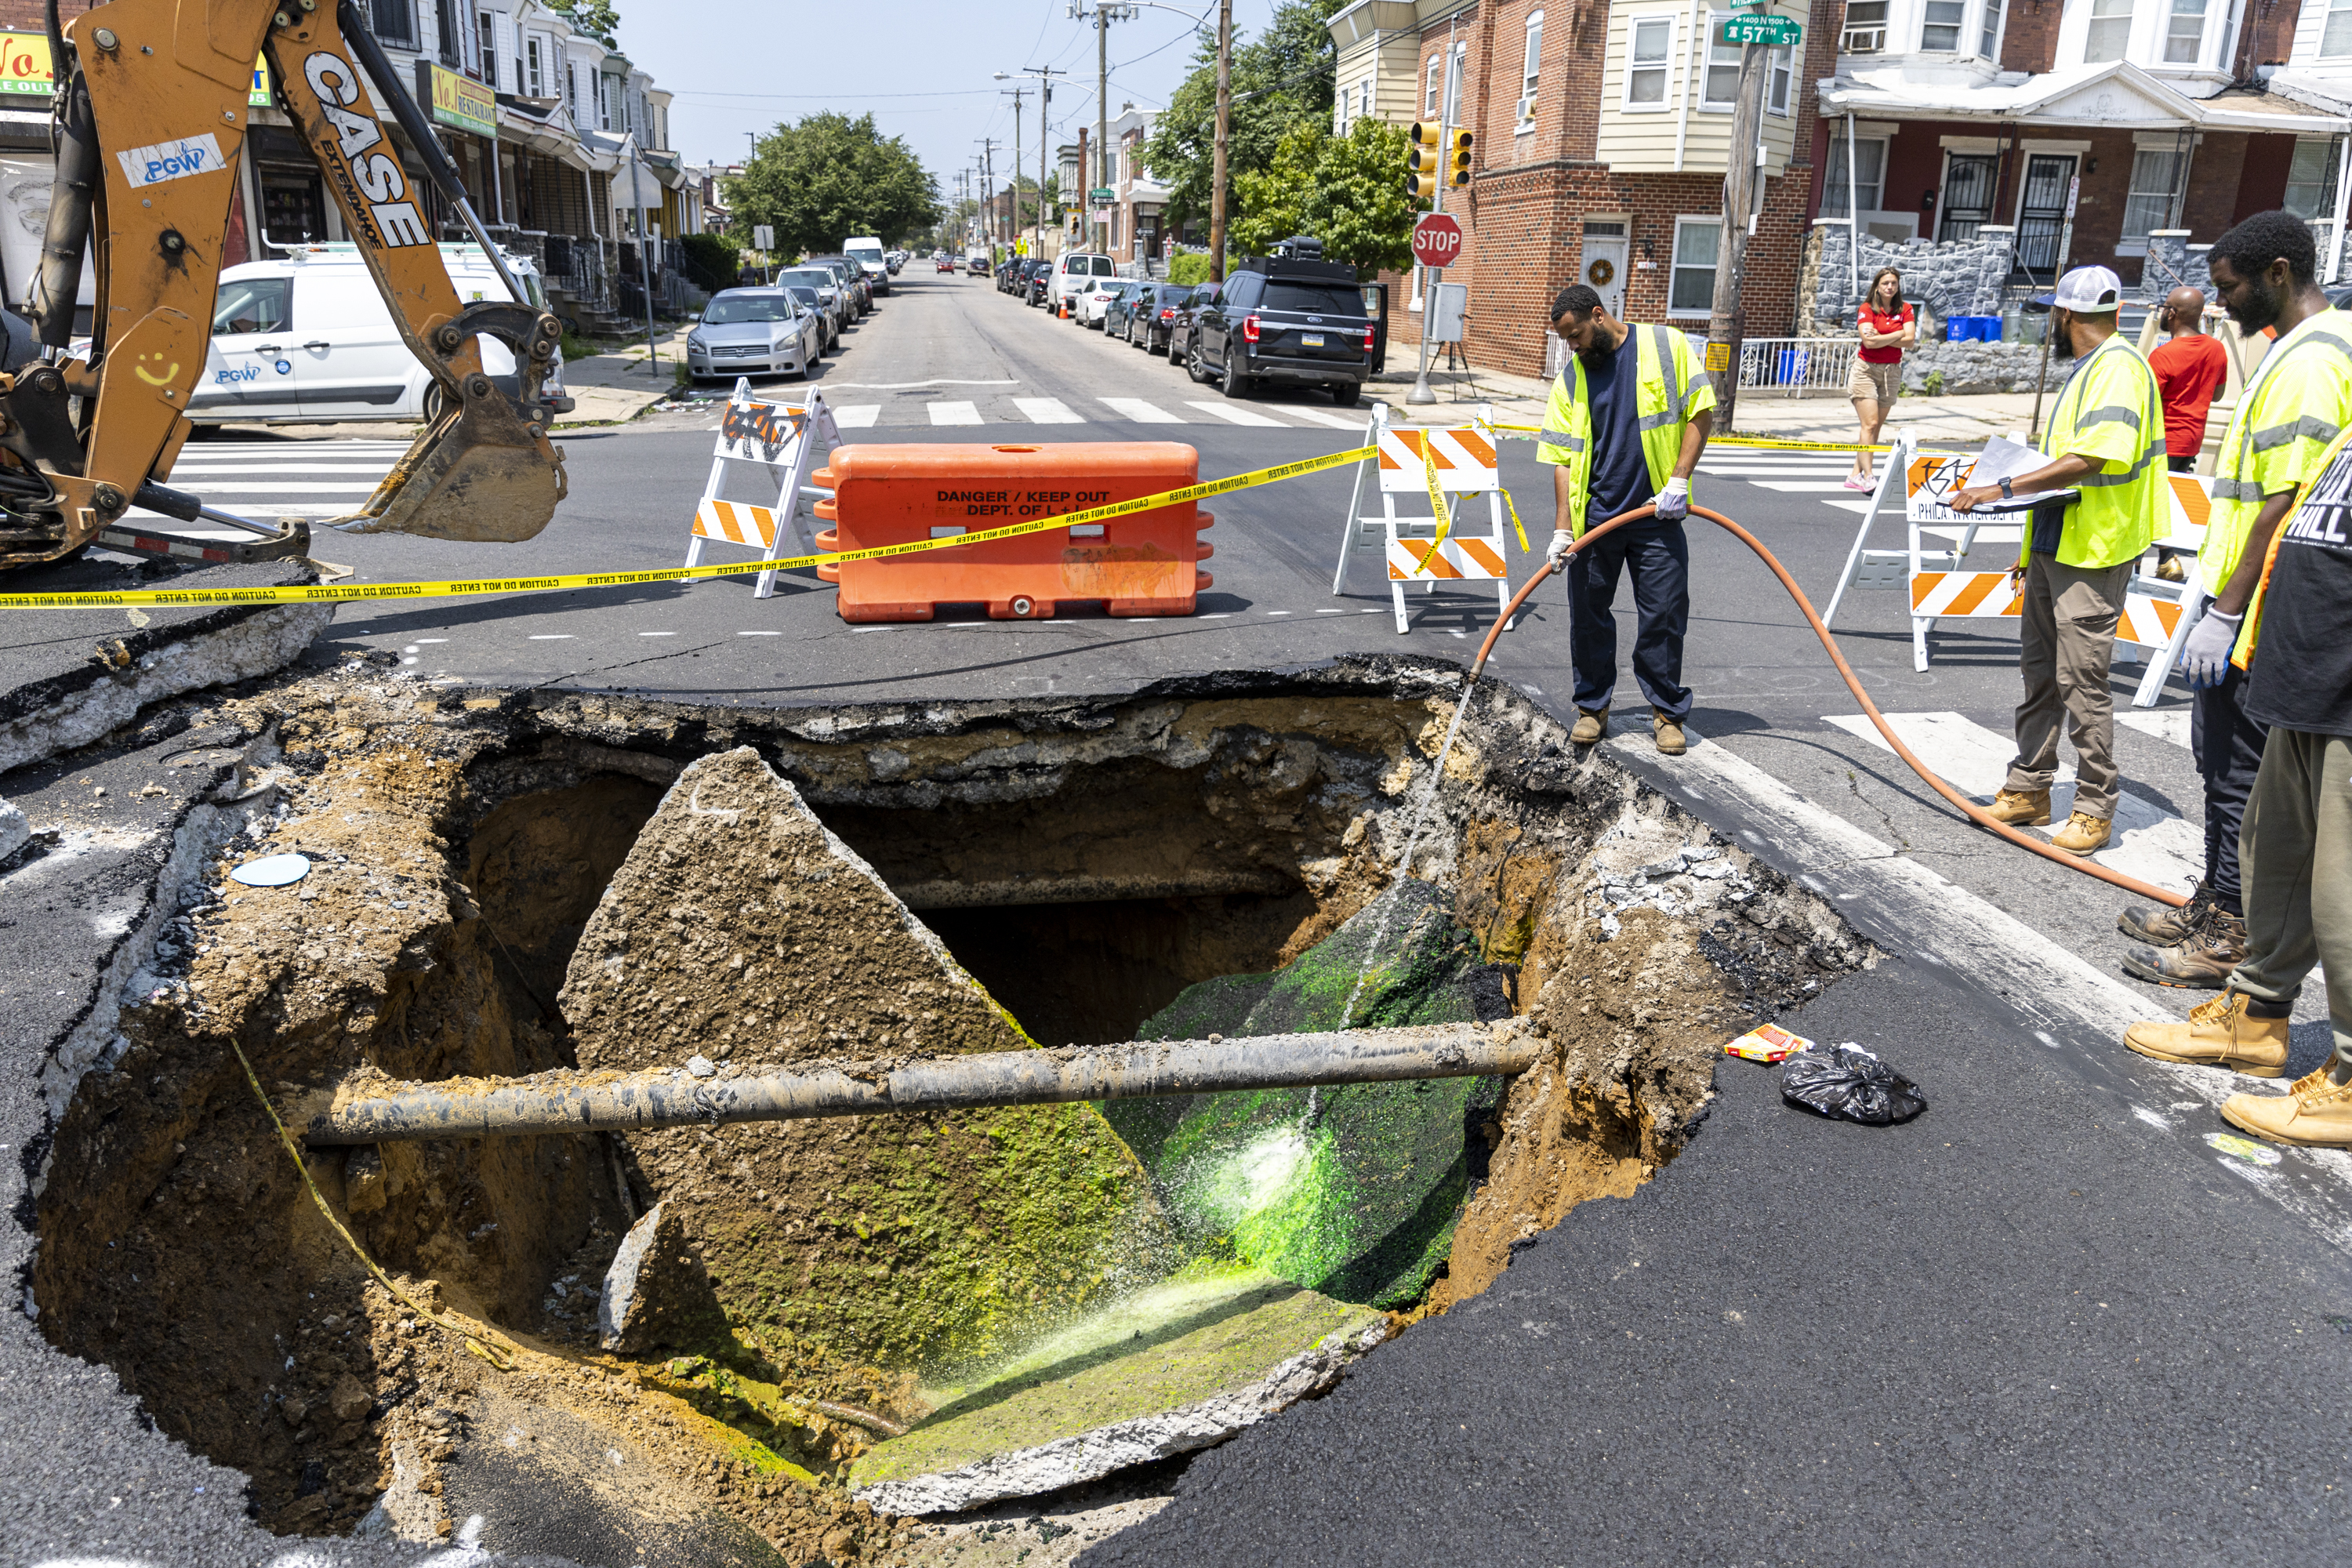 Powel-SLAMS construction project finally breaks ground - Chalkbeat  Philadelphia